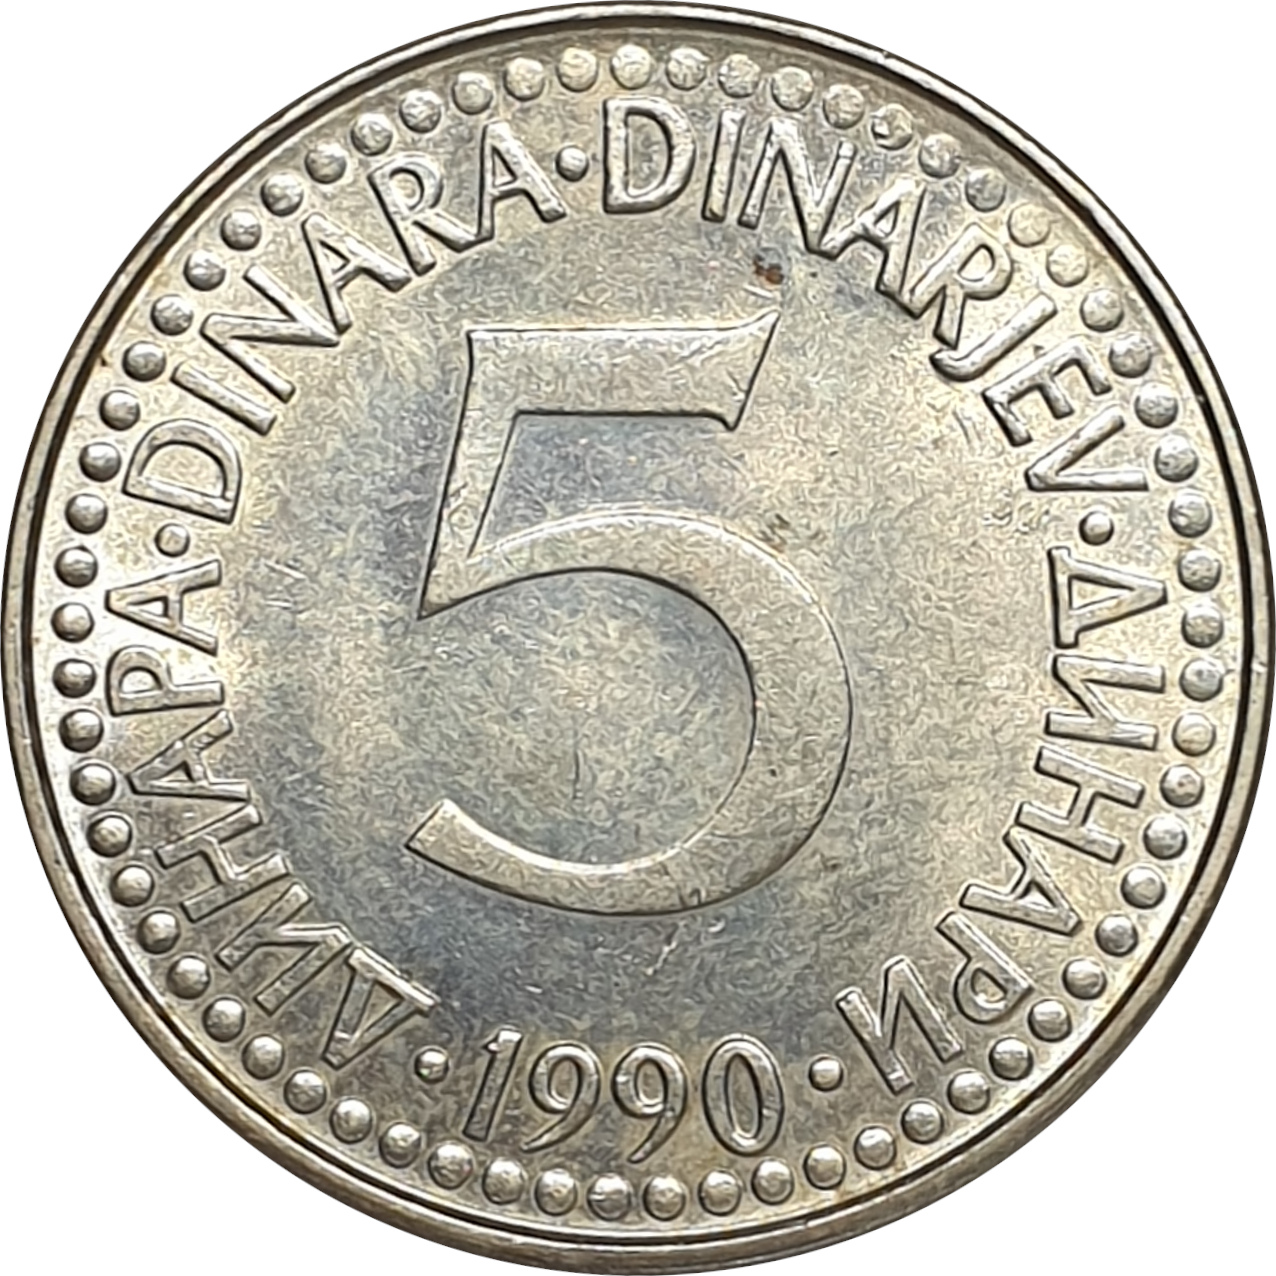 5 dinara - 1990 issue